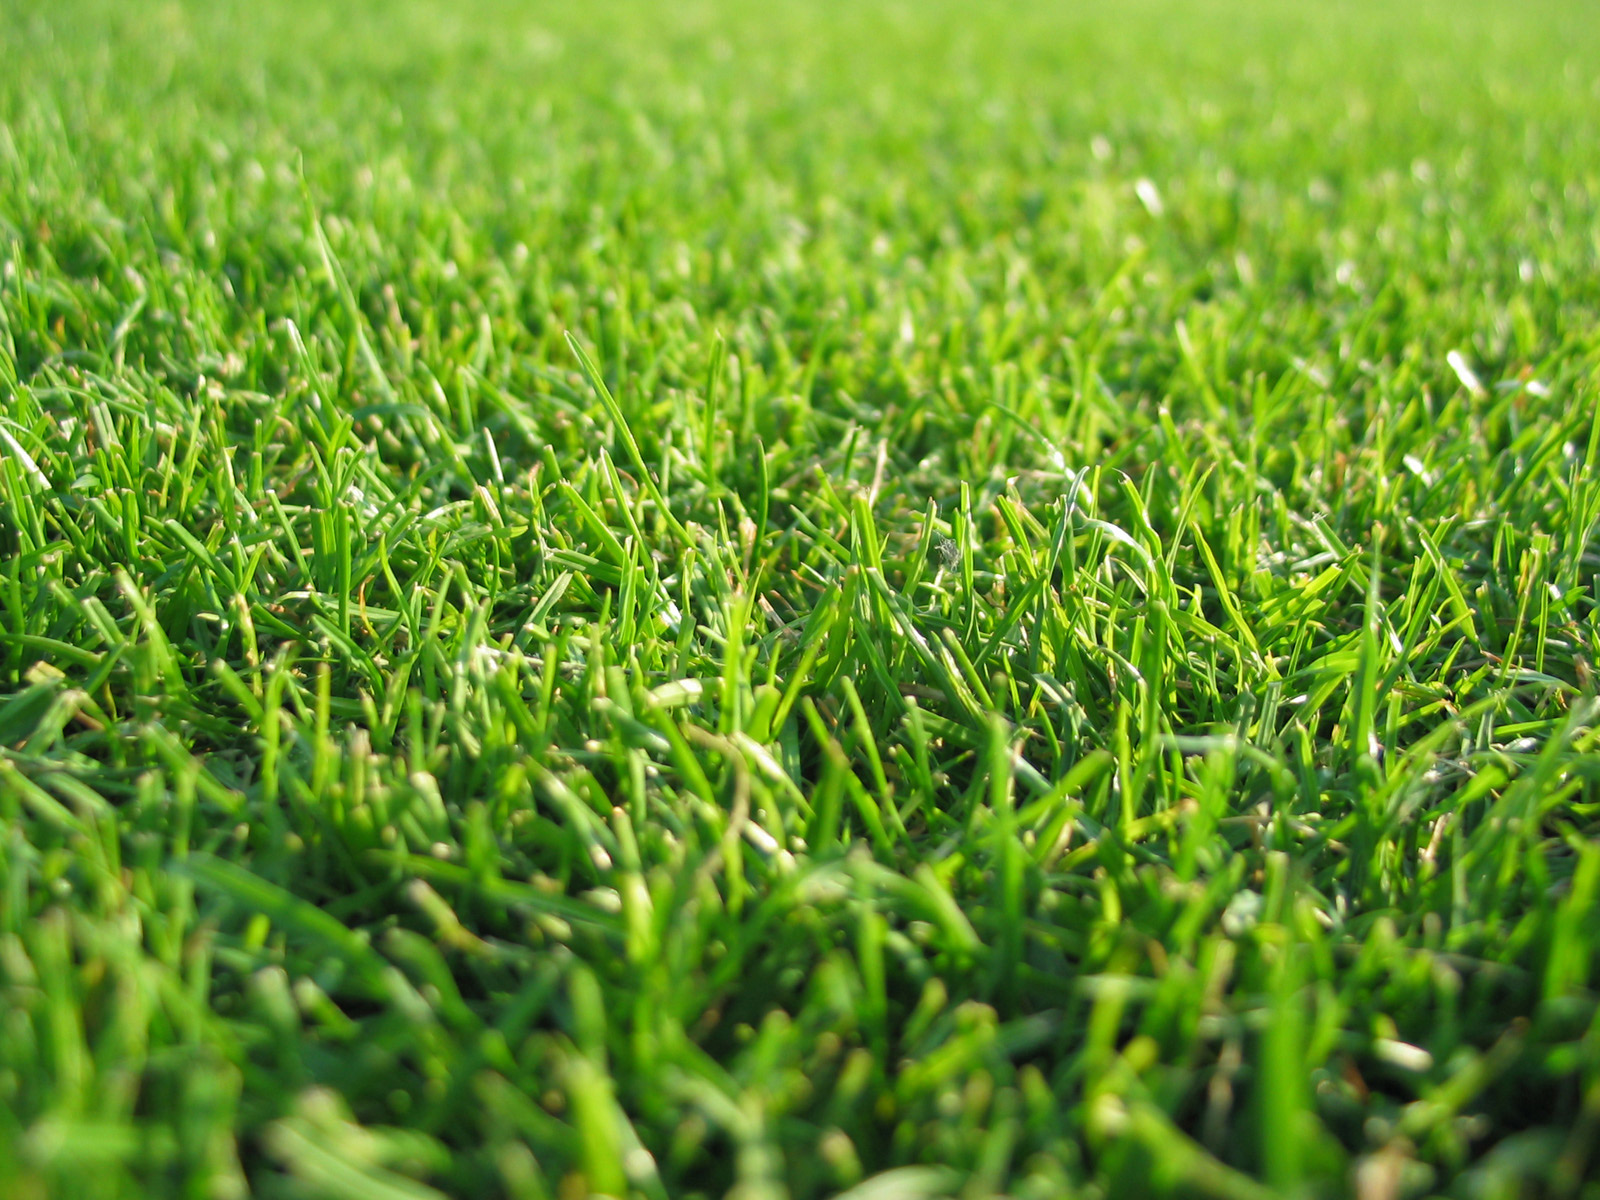 grass wallpaper hd,grass,green,lawn,plant,grass family